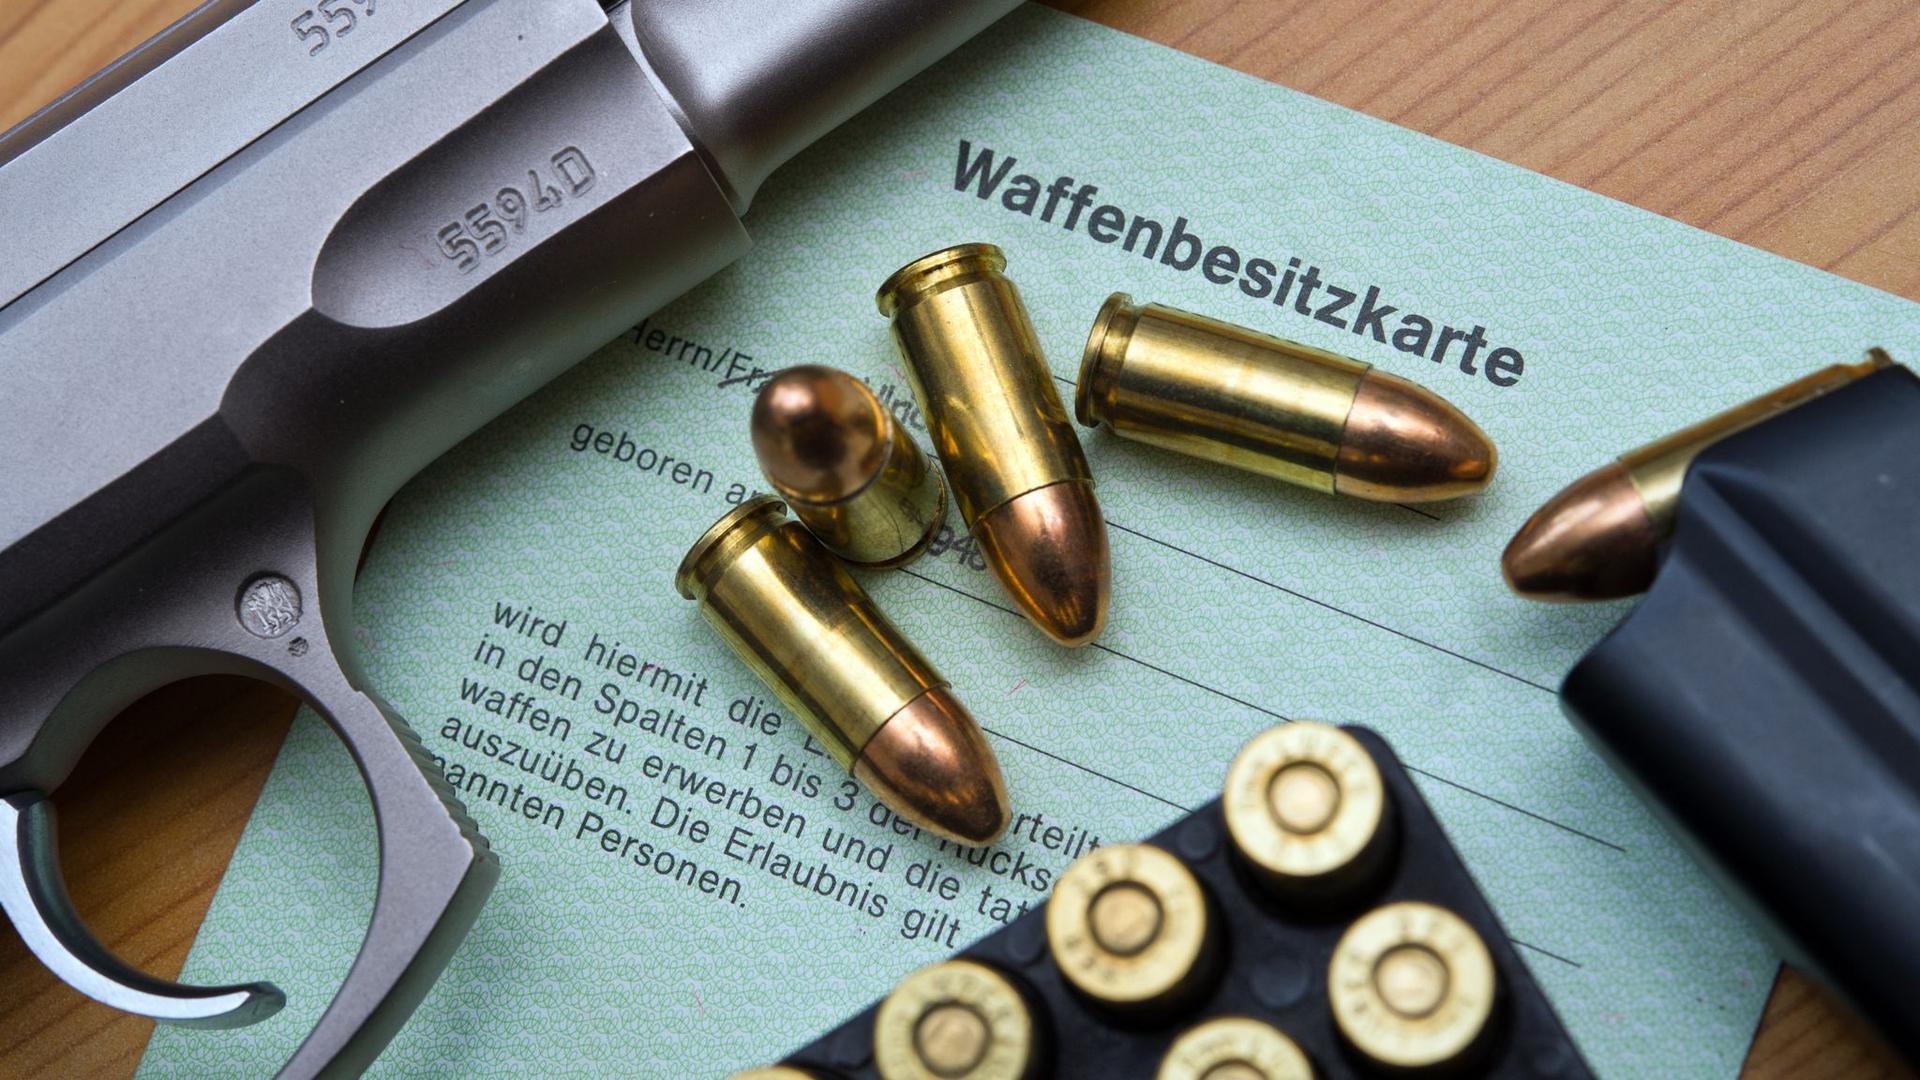 Eine Kaliber 9 mm Pistole, Patronen und ein Magazin liegen auf einer Waffenbesitzkarte.